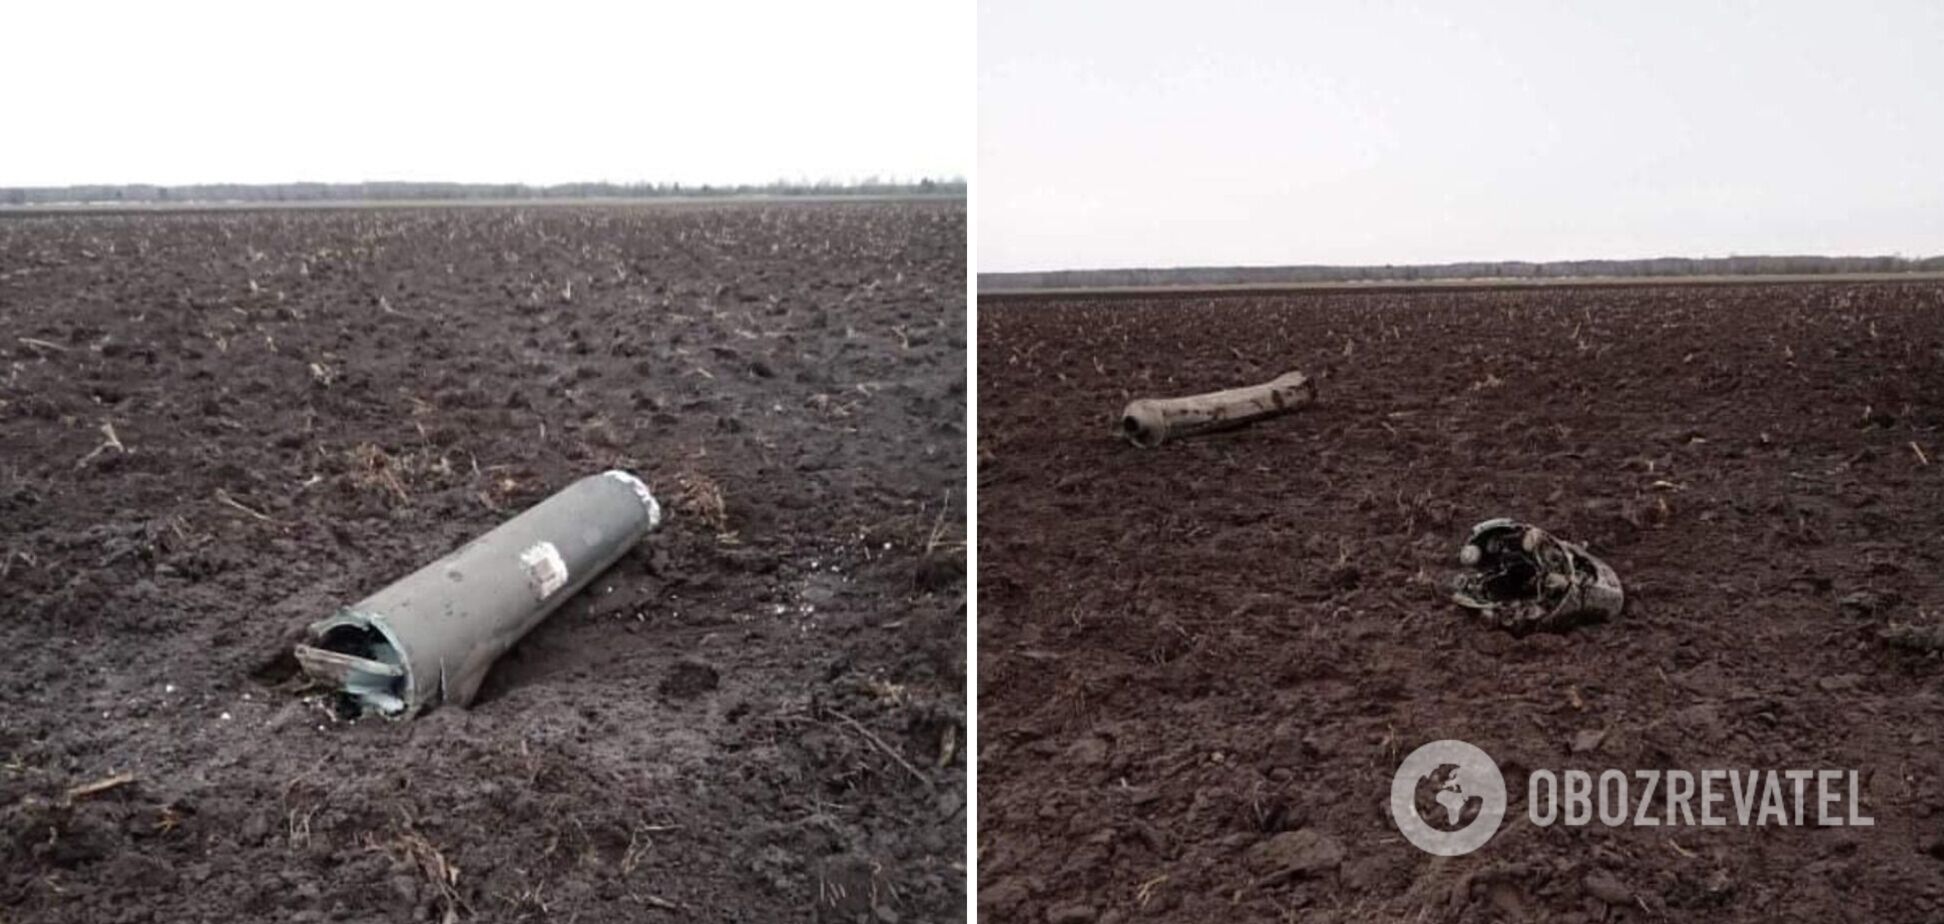 У Білорусі заявили про падіння 'української ракети': Лукашенко відправив на місце військових та слідчих. Фото